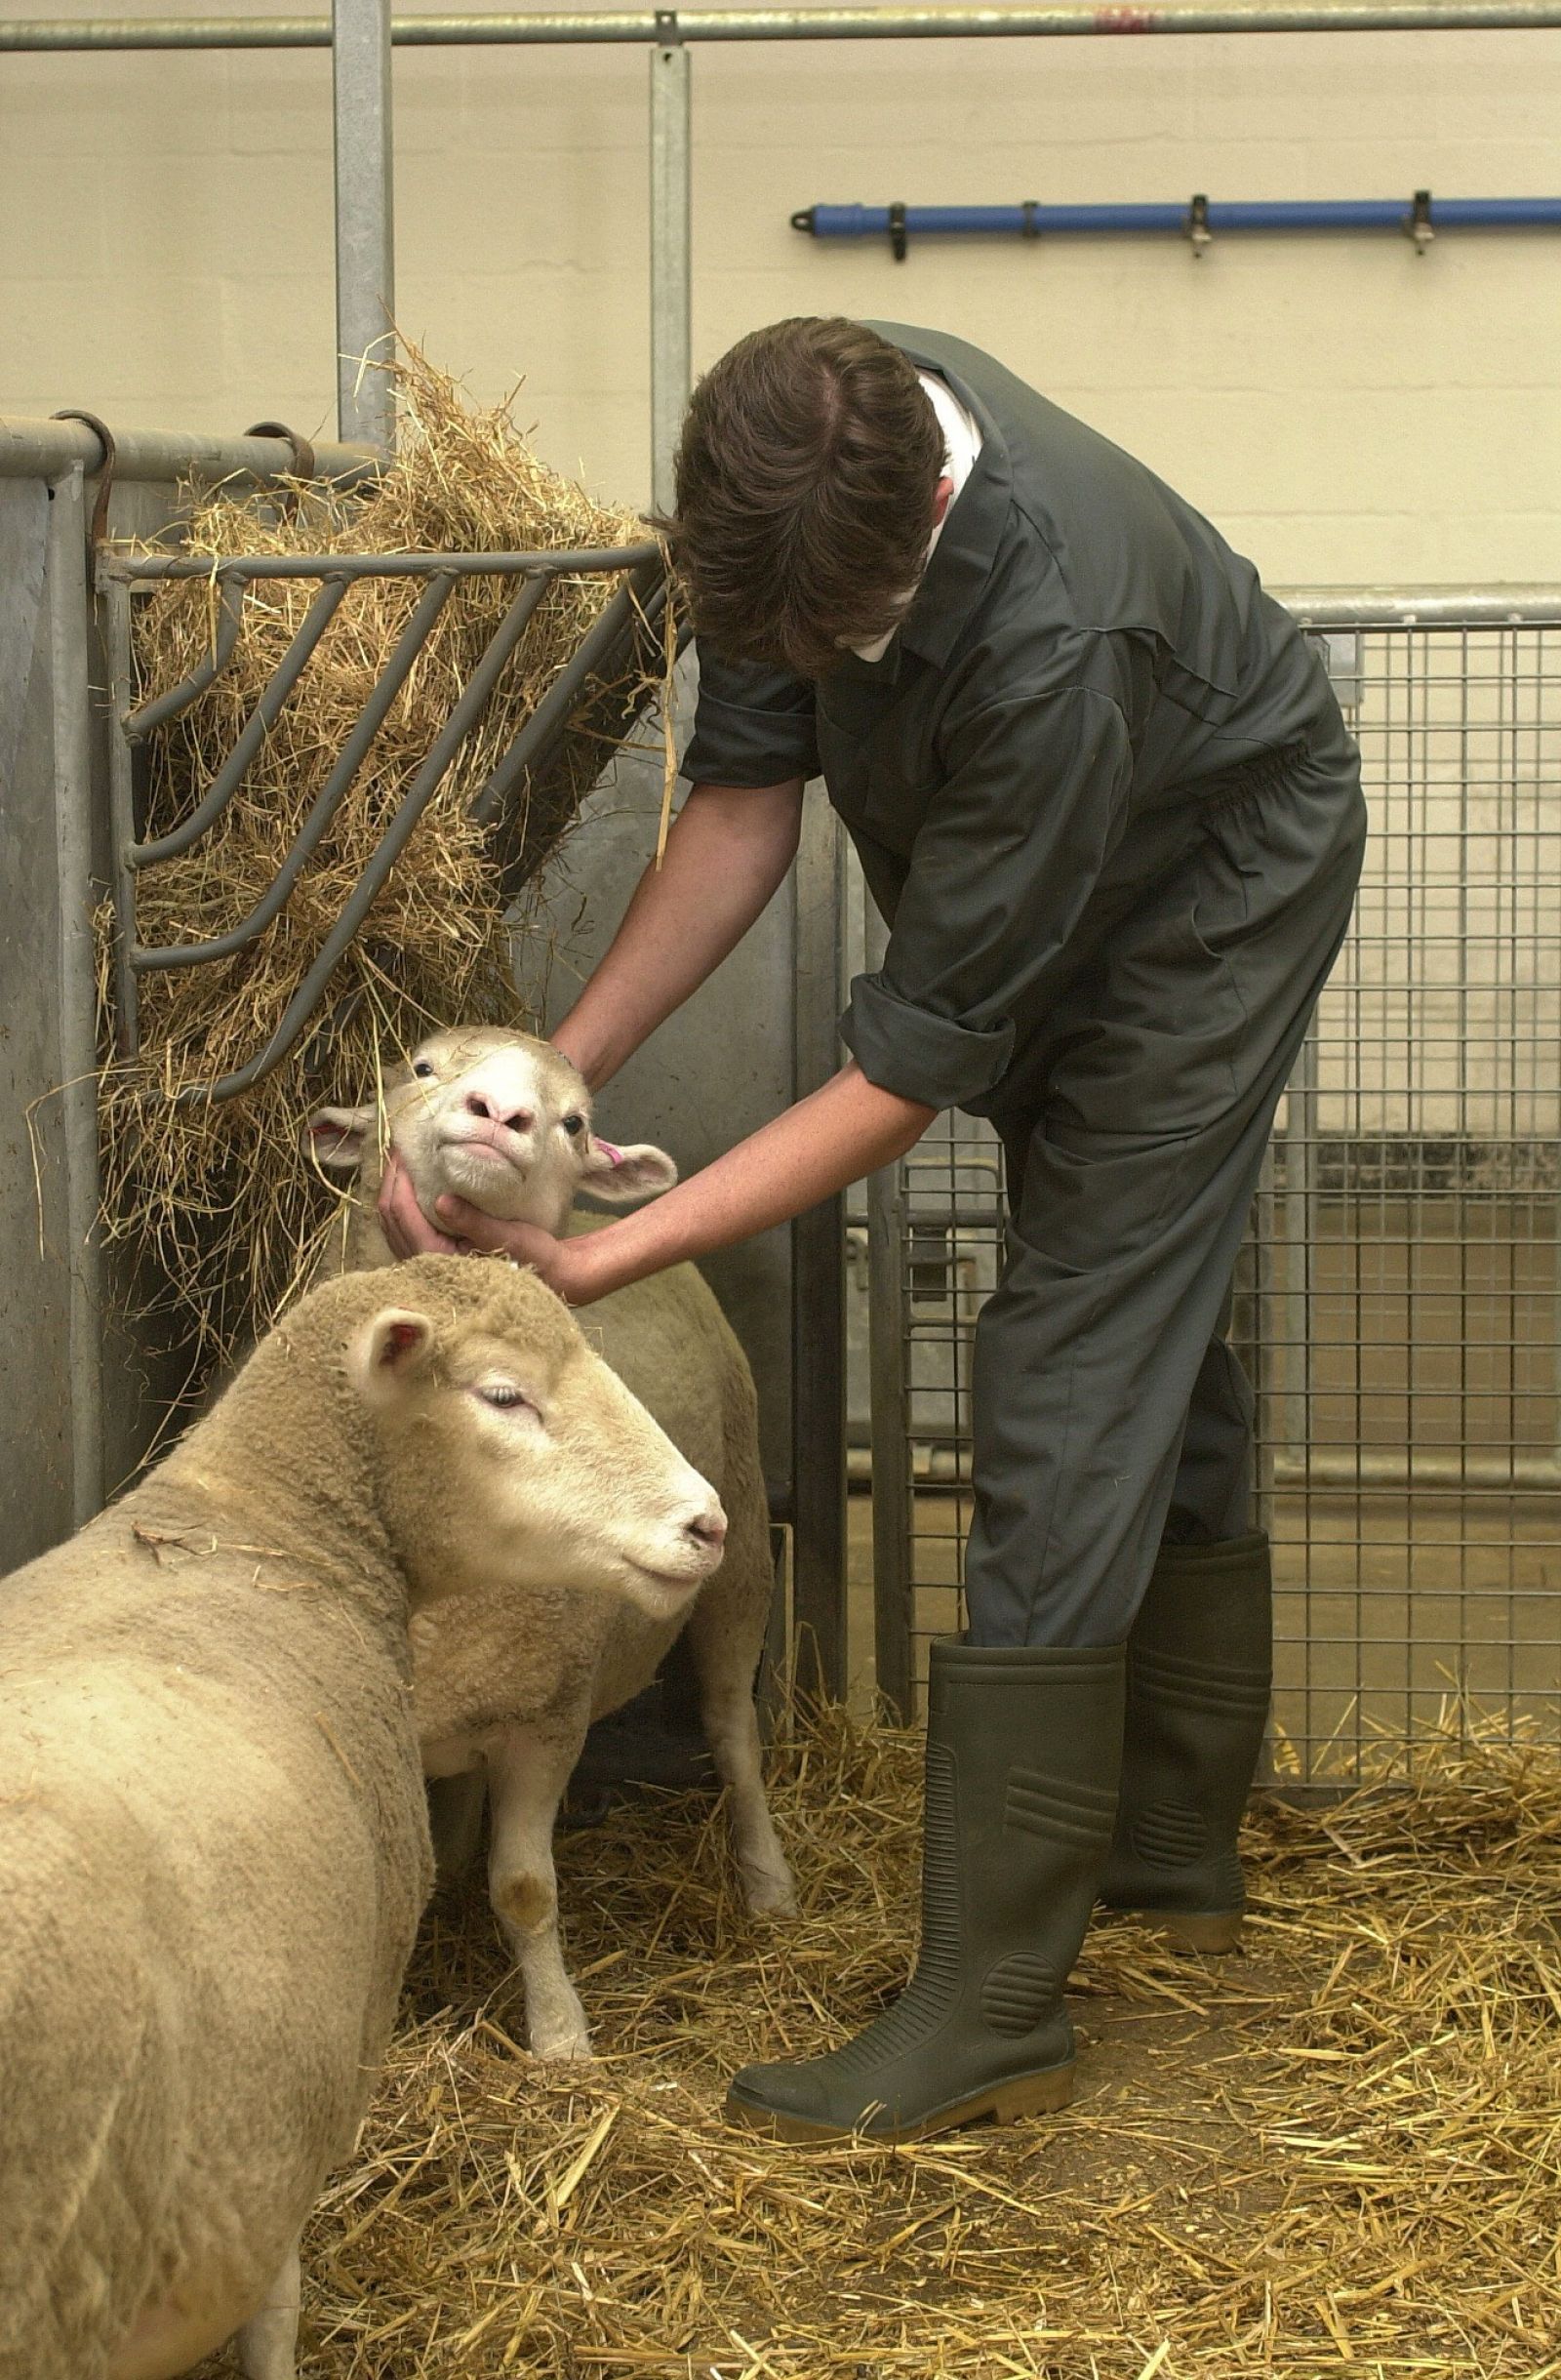 Technician examines sheep